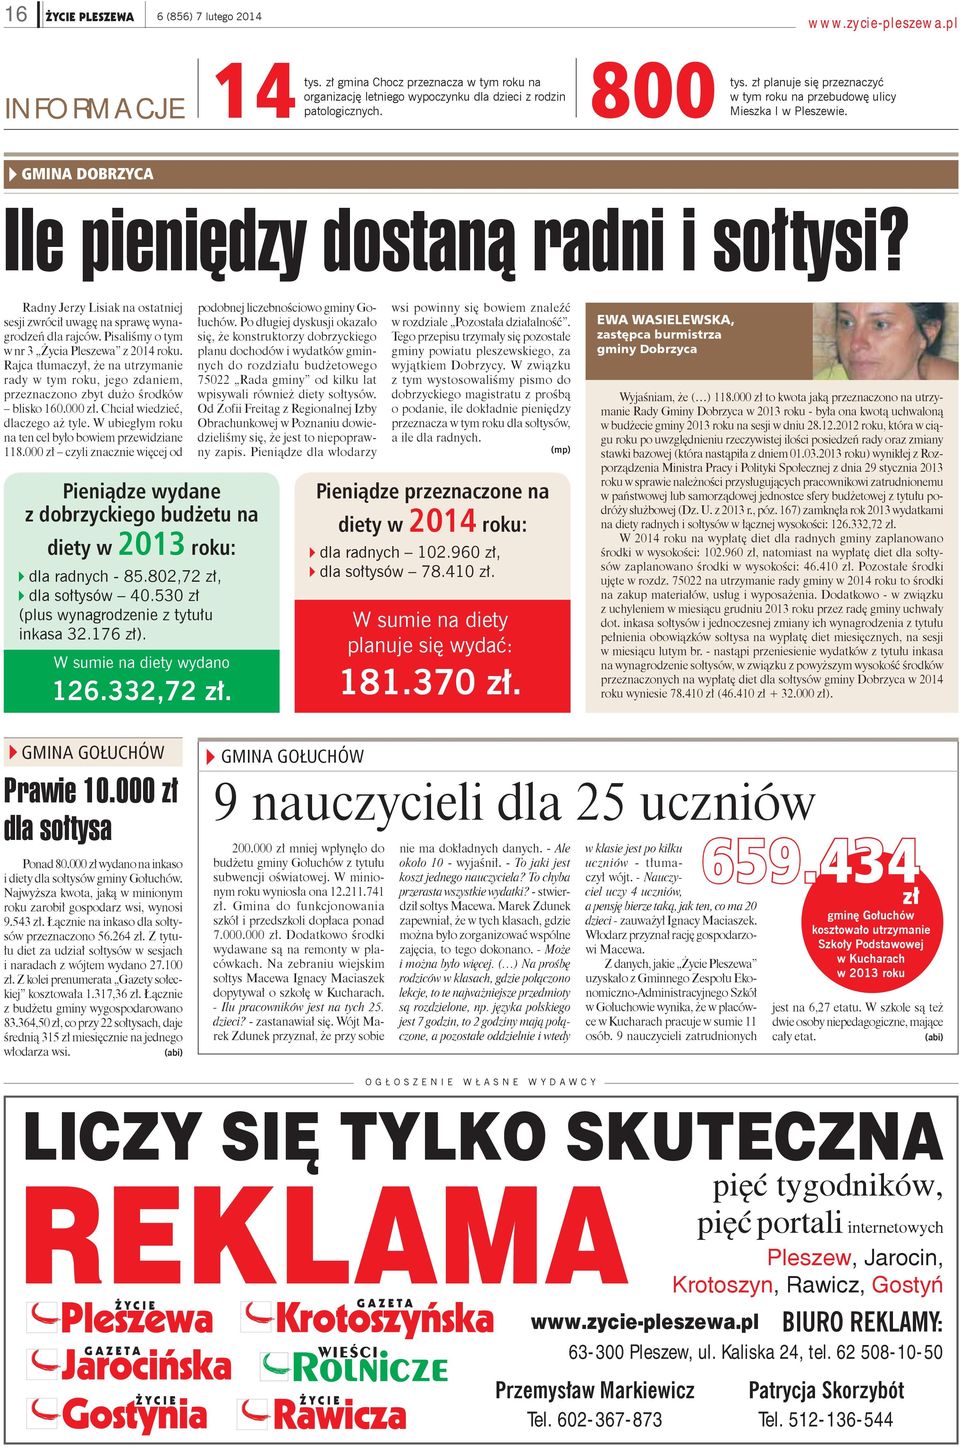 Radny Jerzy Lisiak na ostatniej sesji zwrócił uwagę na sprawę wynagrodzeń dla rajców. Pisaliśmy o tym w nr 3 Życia Pleszewa z 2014 roku.